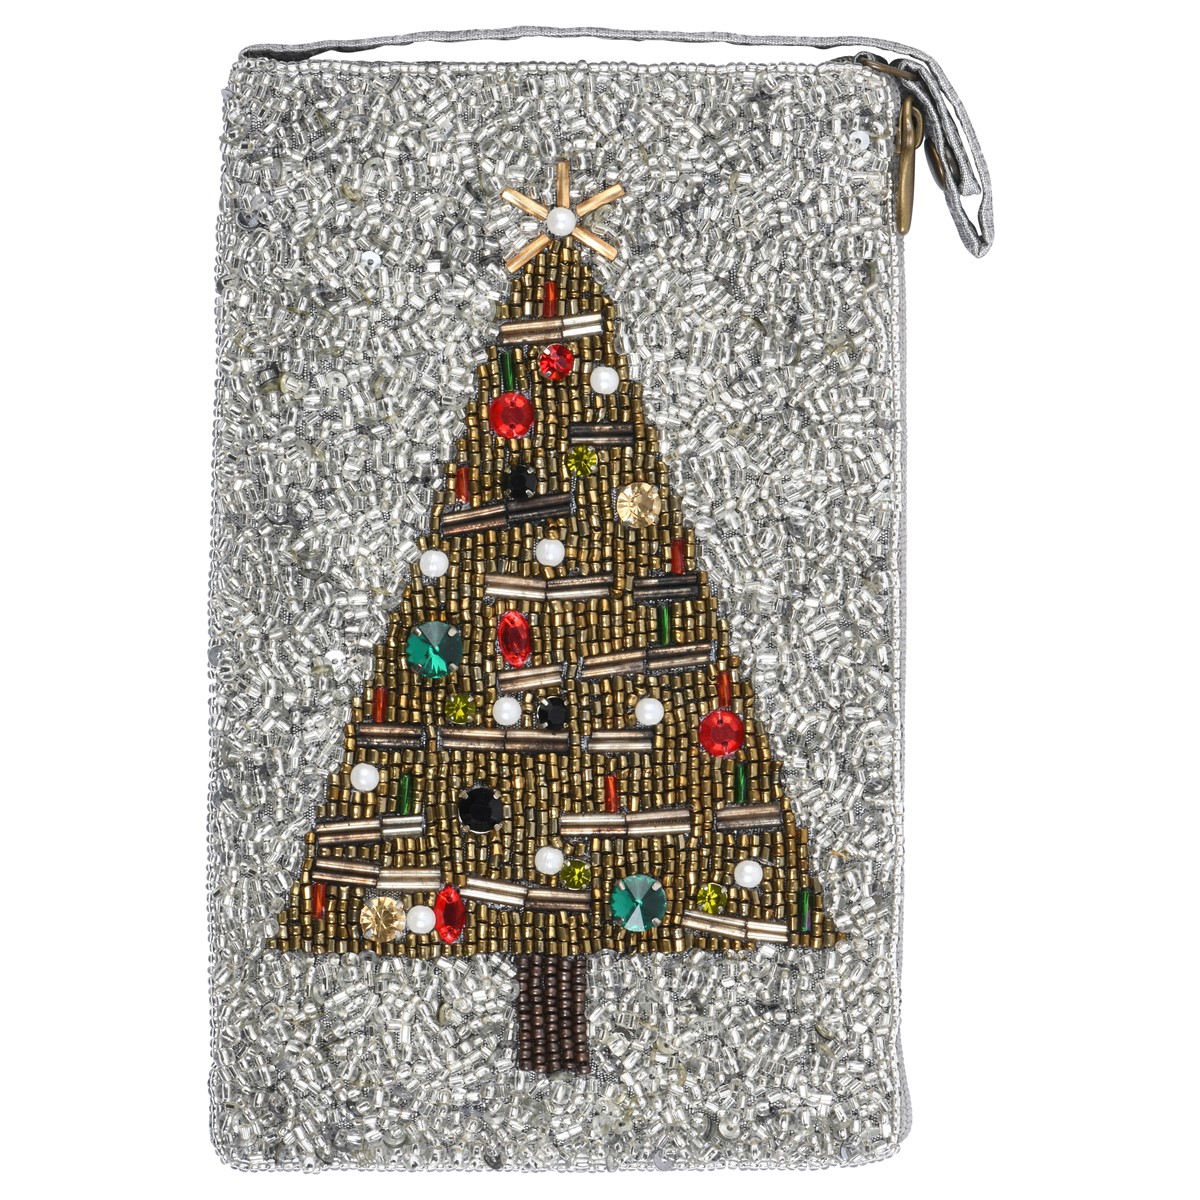 Club Bag Oh Christmas Tree SHB655